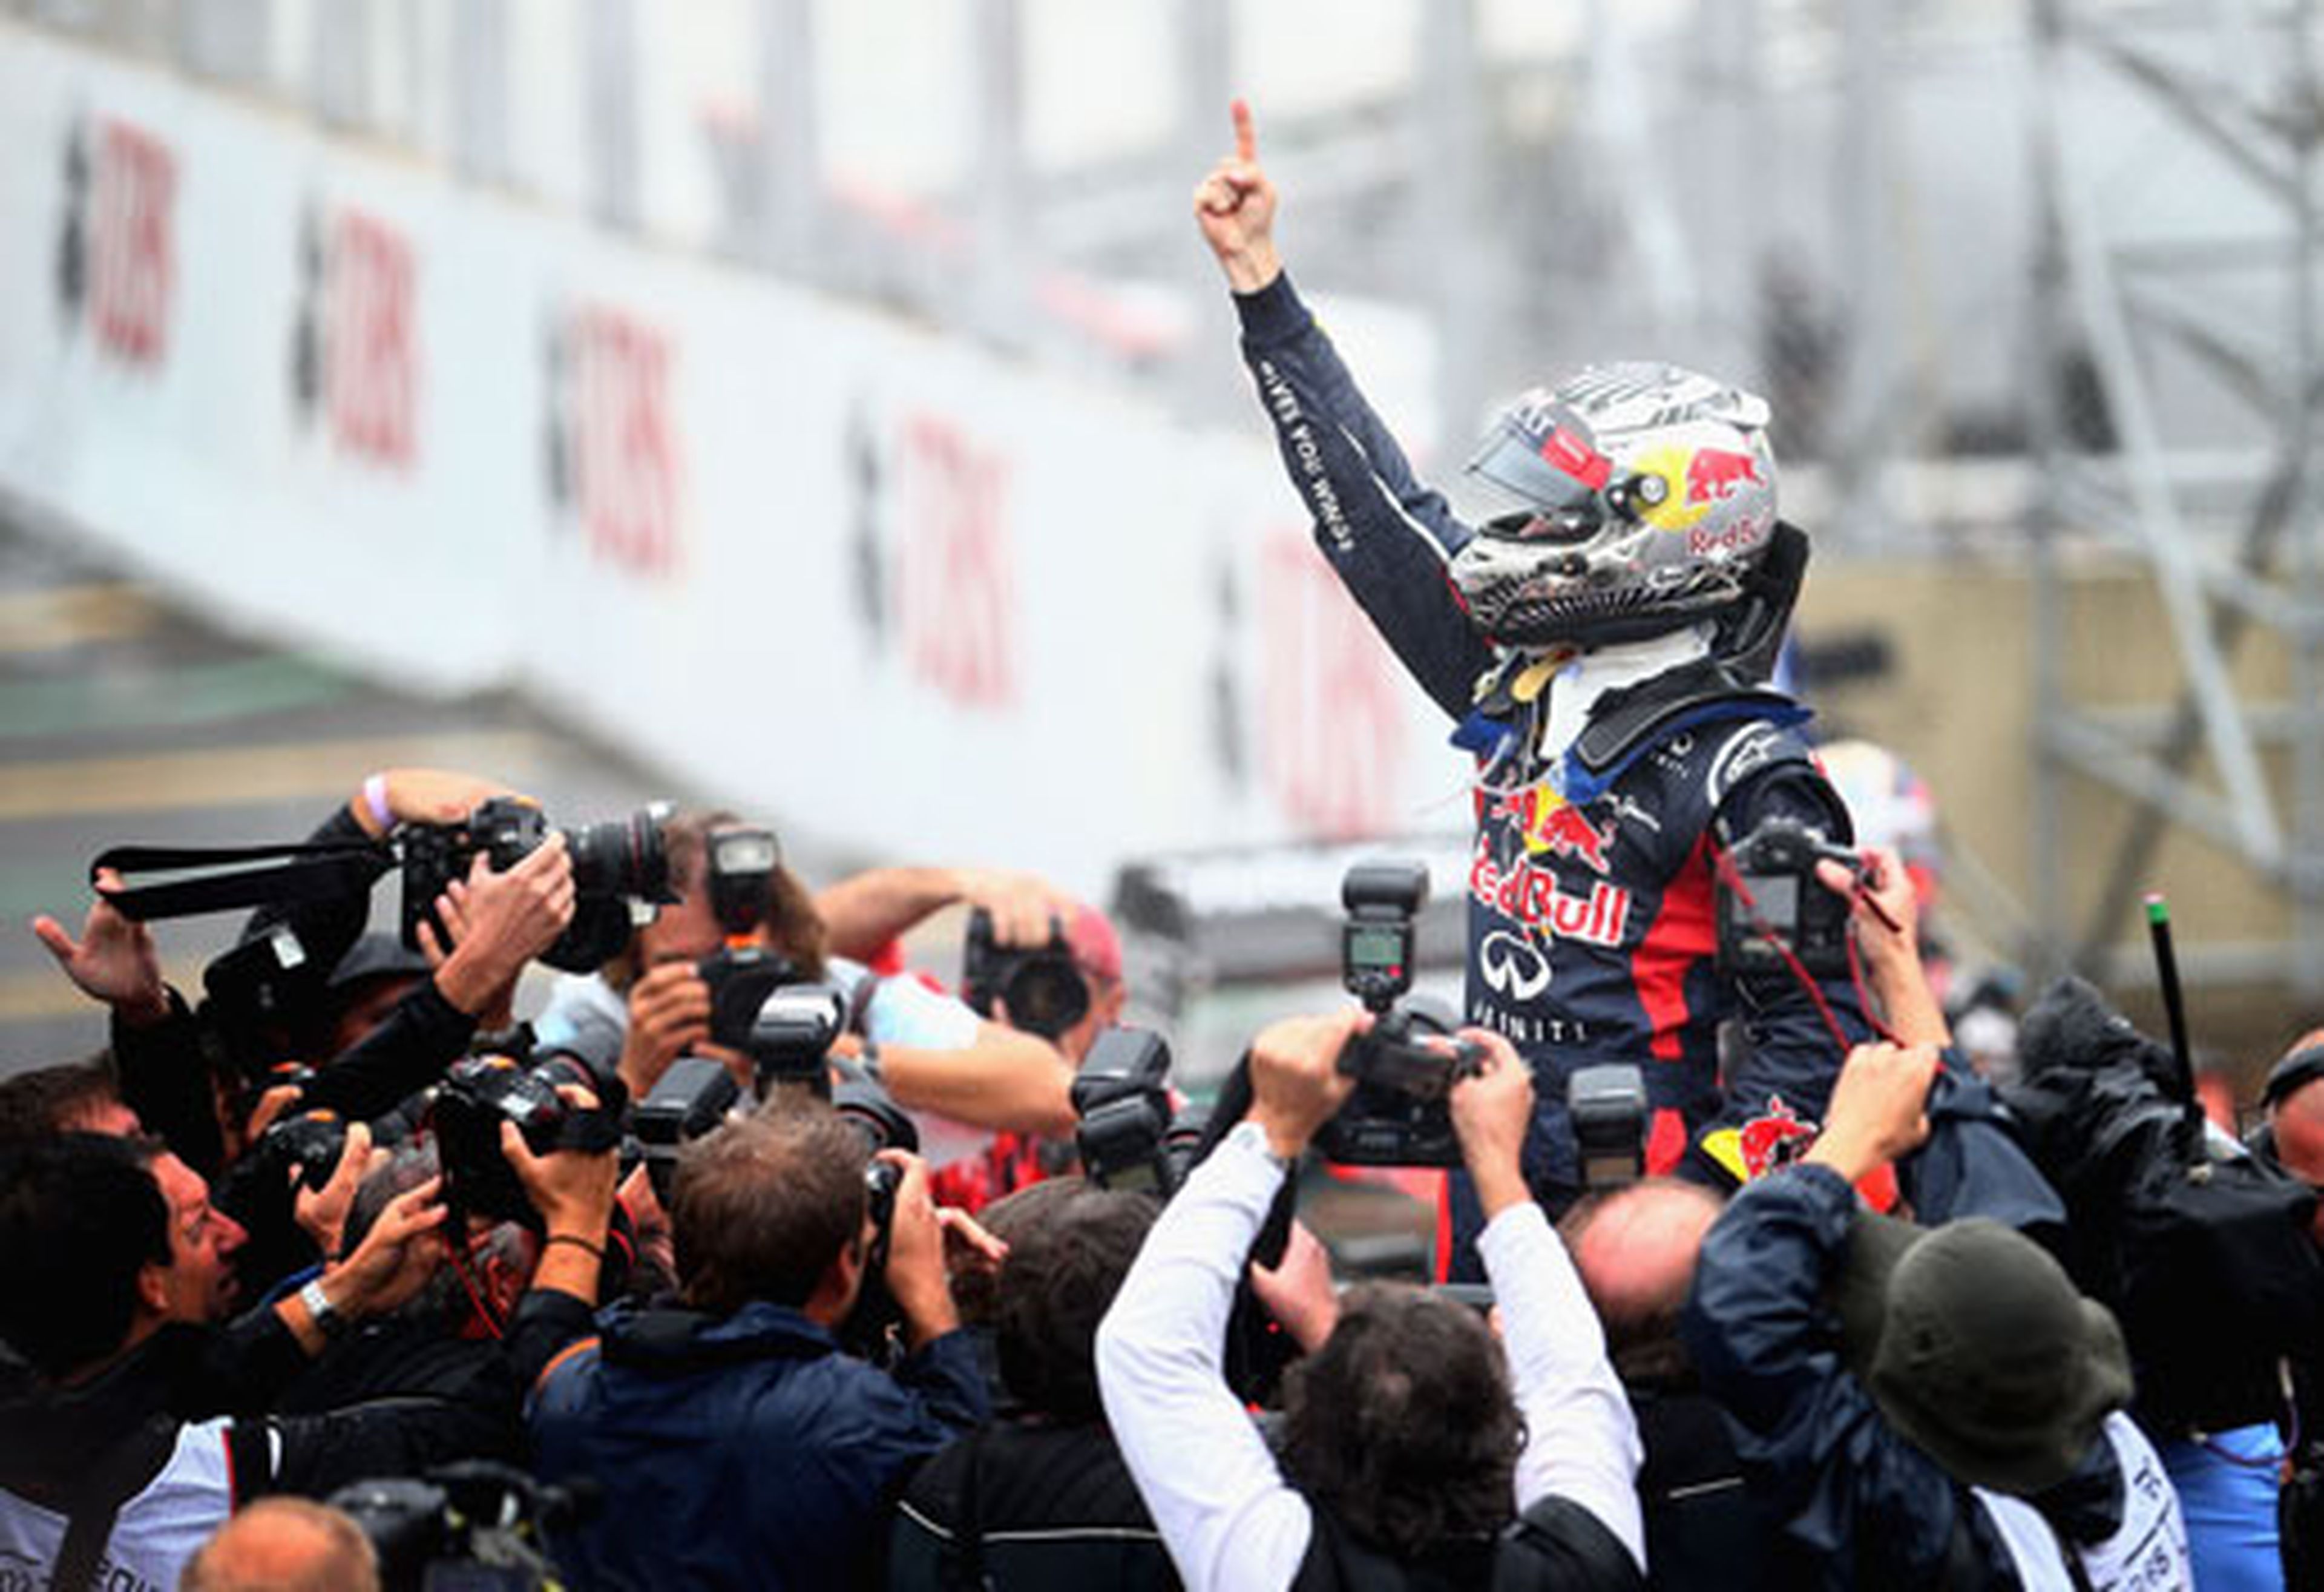 Sebastian Vettel - Red Bull - Brasil